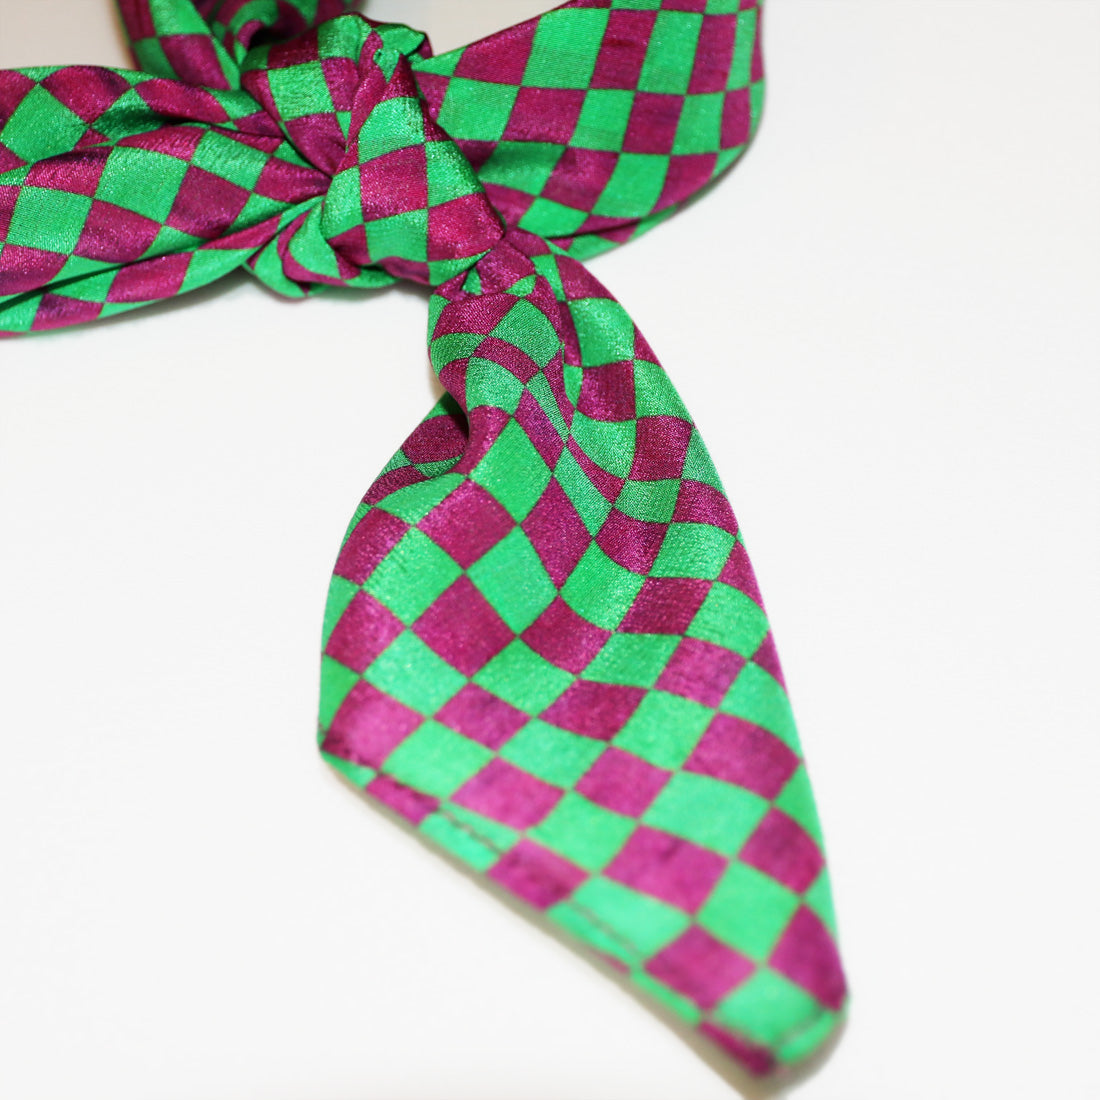 buy stylish fashion green silk scarf online paris taipei tokyo isetan dover street vogue details graphic design